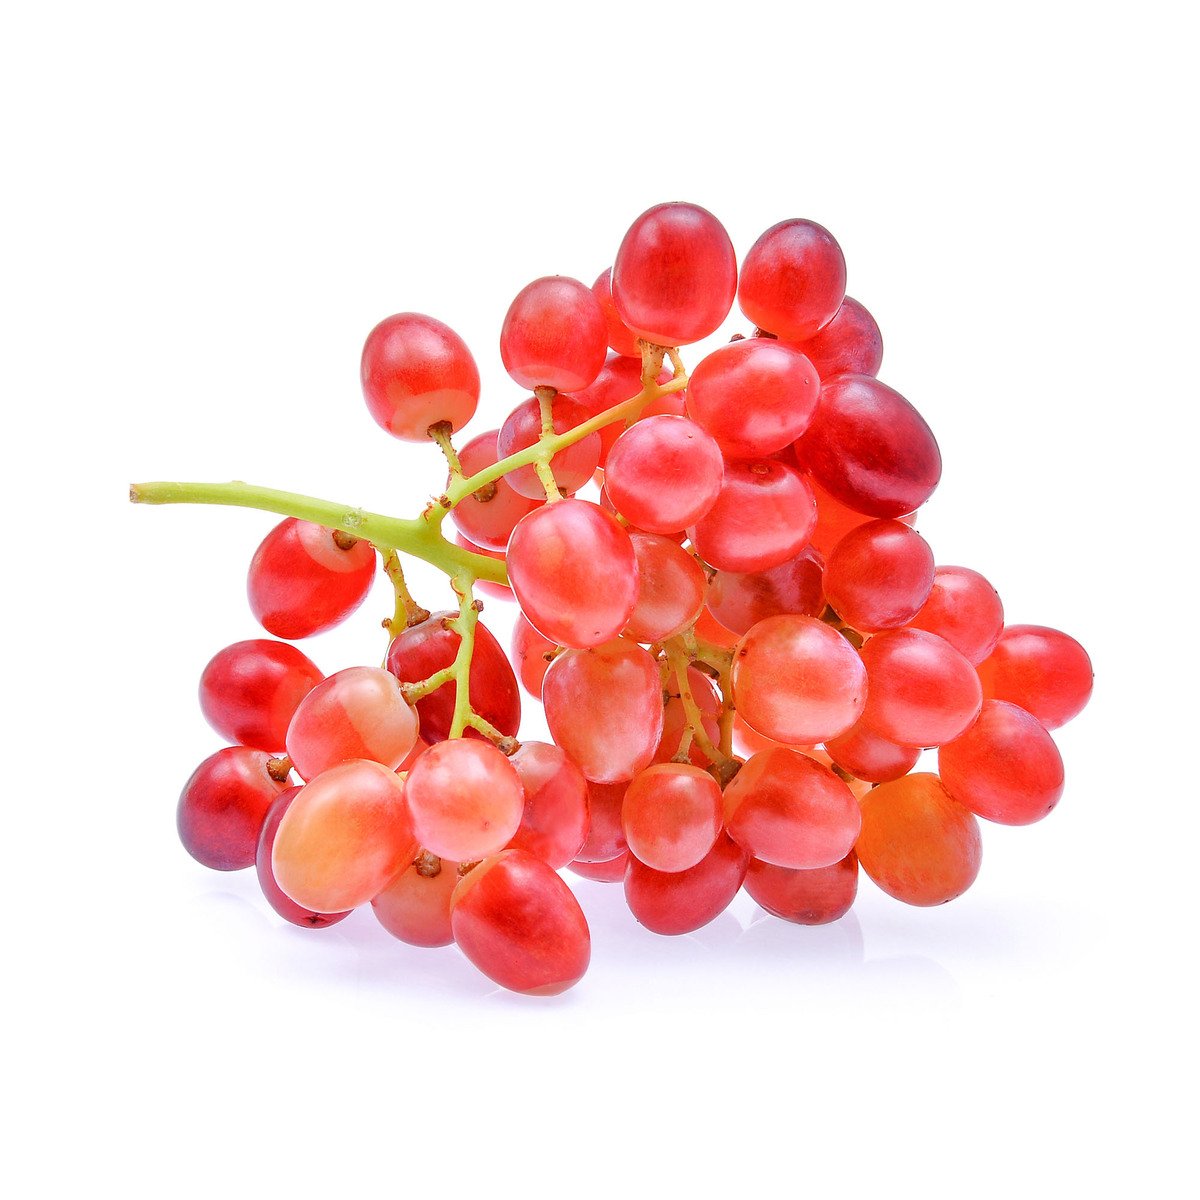 اشتري قم بشراء Grapes Red Crimson Australia 500 g Online at Best Price من الموقع - من لولو هايبر ماركت Grapes في الكويت